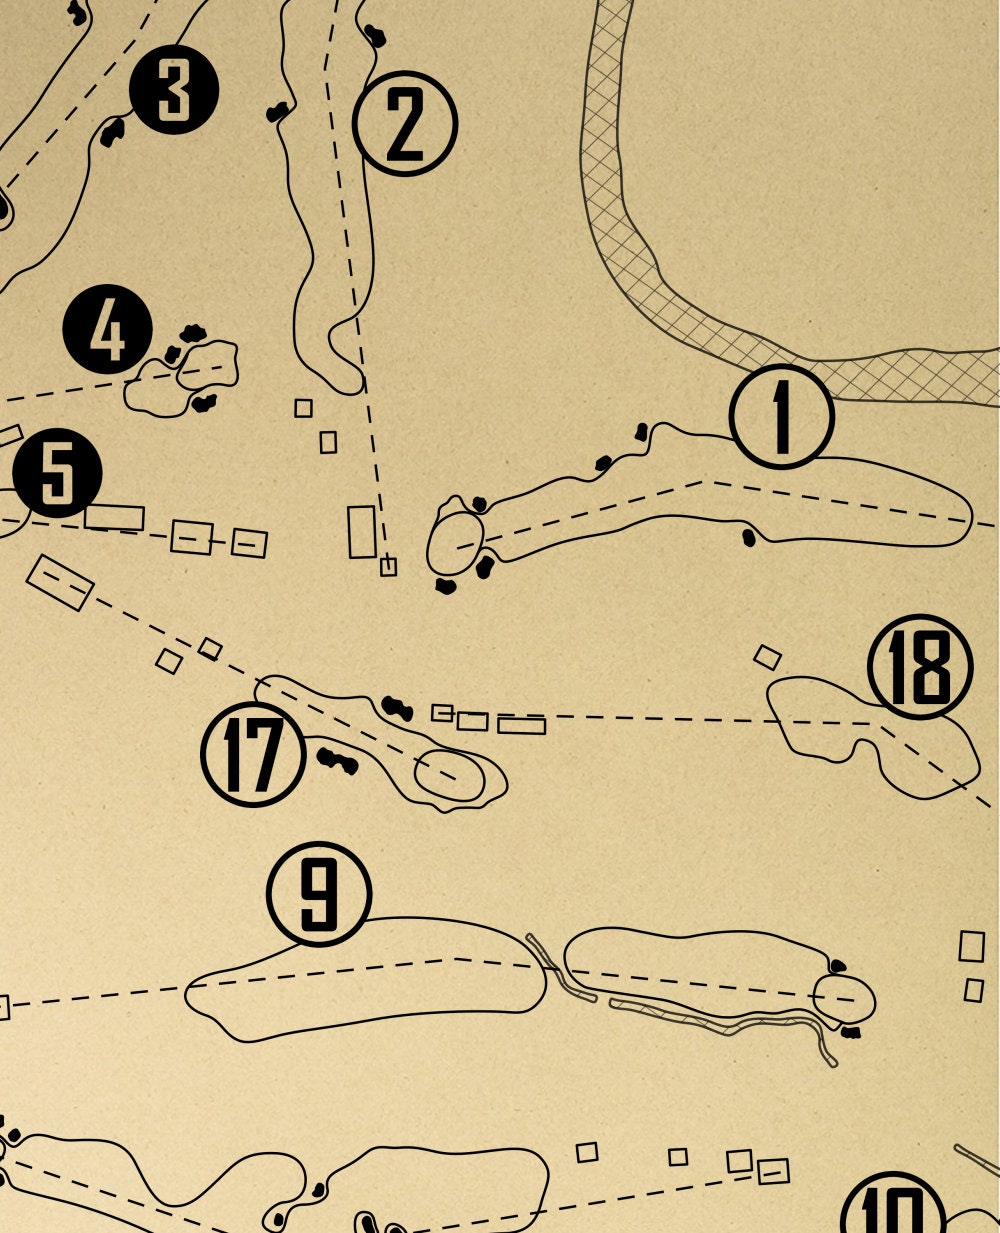 Toronto Golf Club Outline (Print)